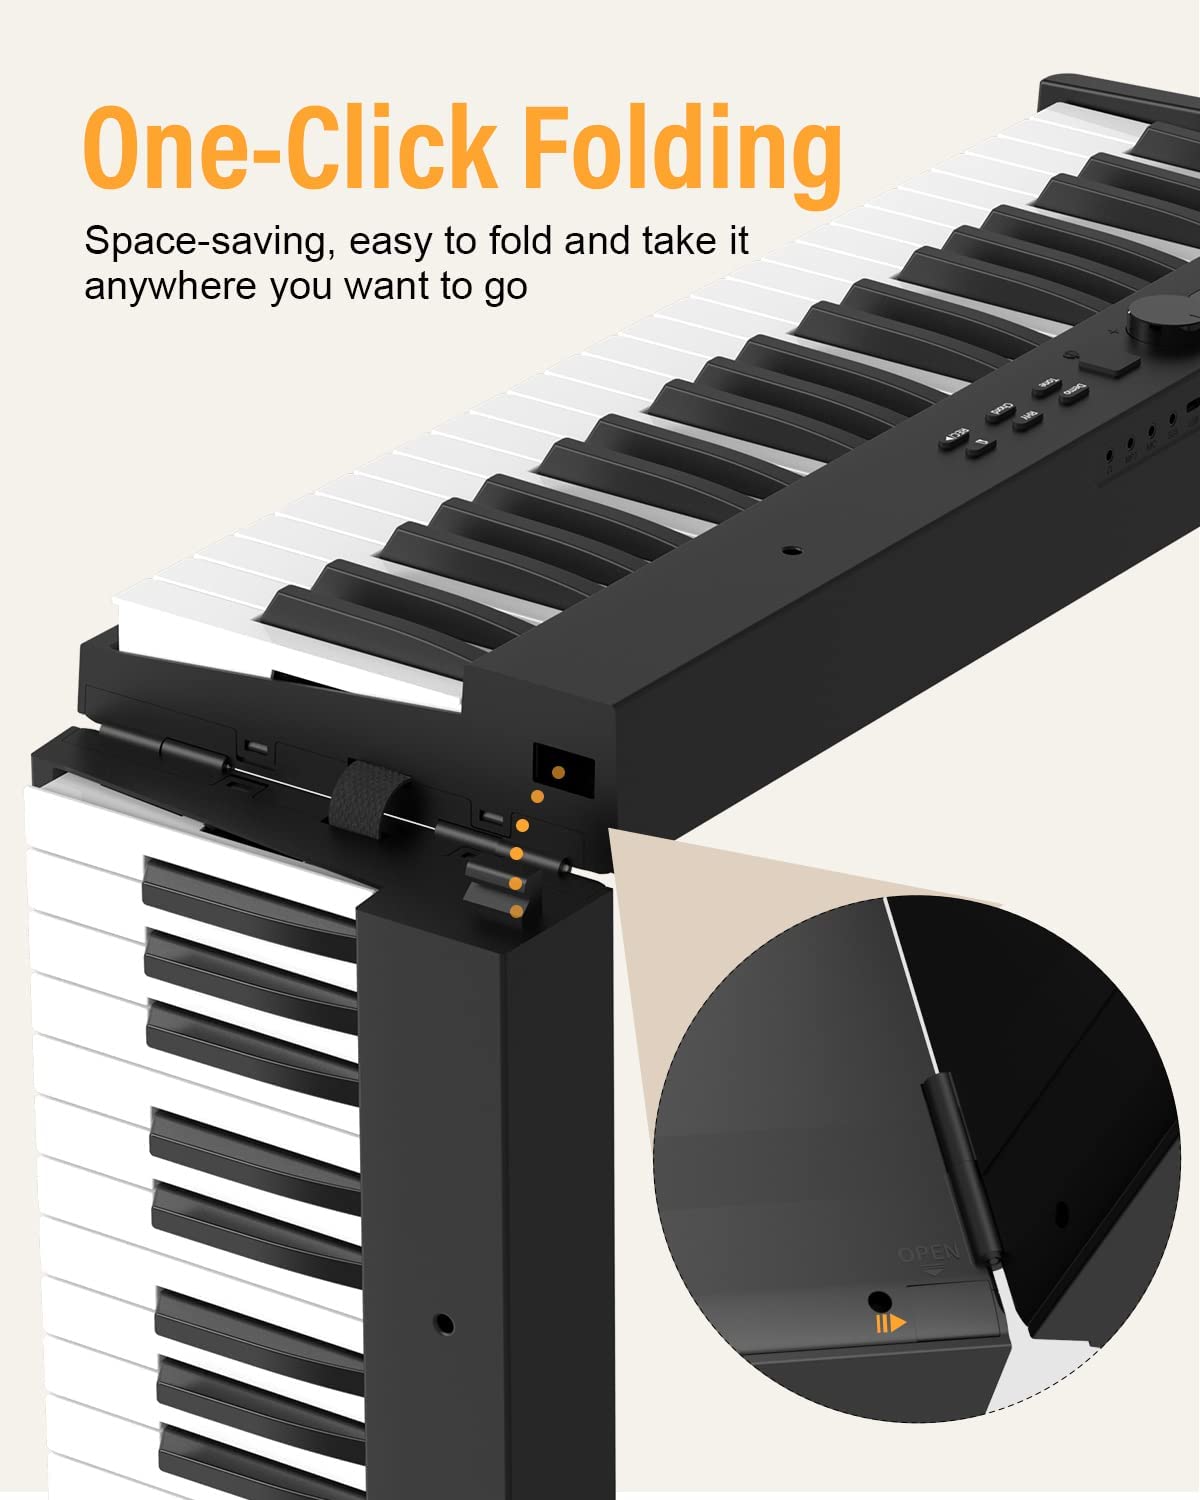 Portable folding MIDI piano